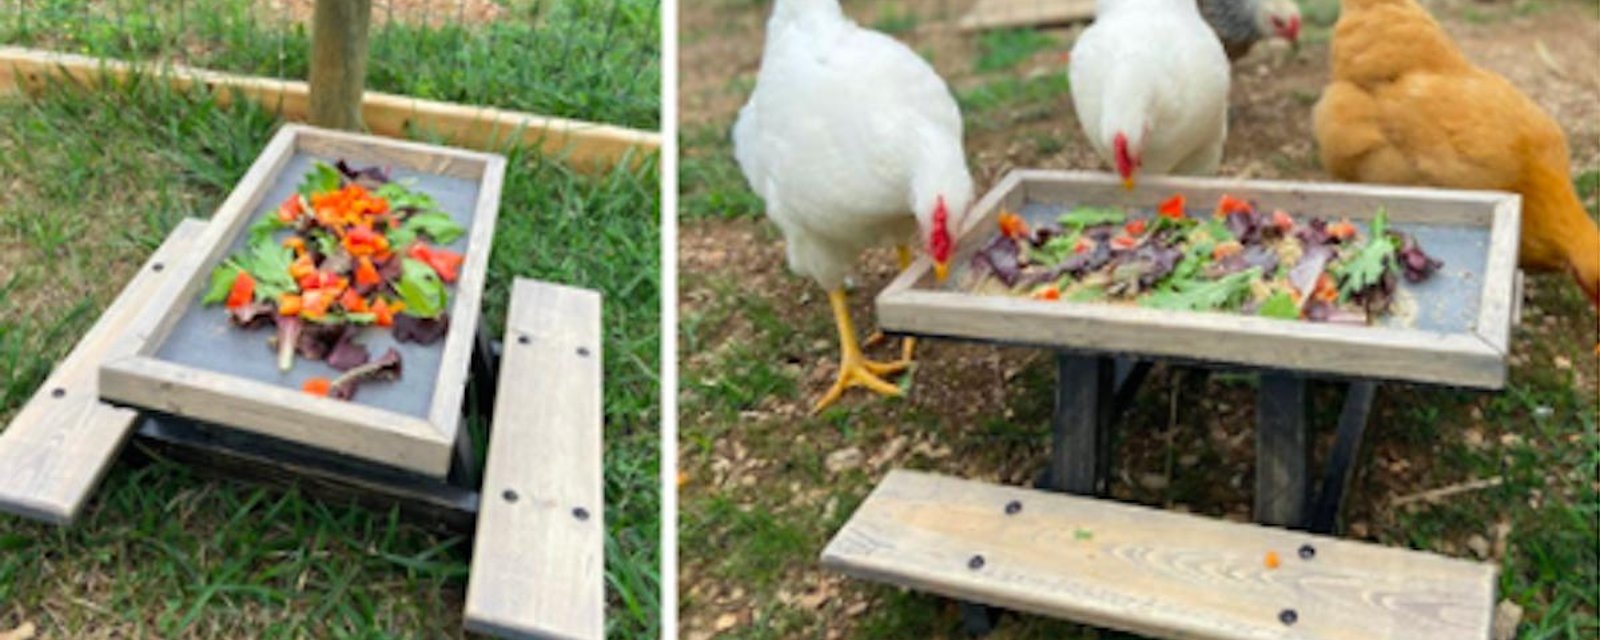 Le summum pour dorloter vos poules: une table à pique-nique spécialement pour elles!